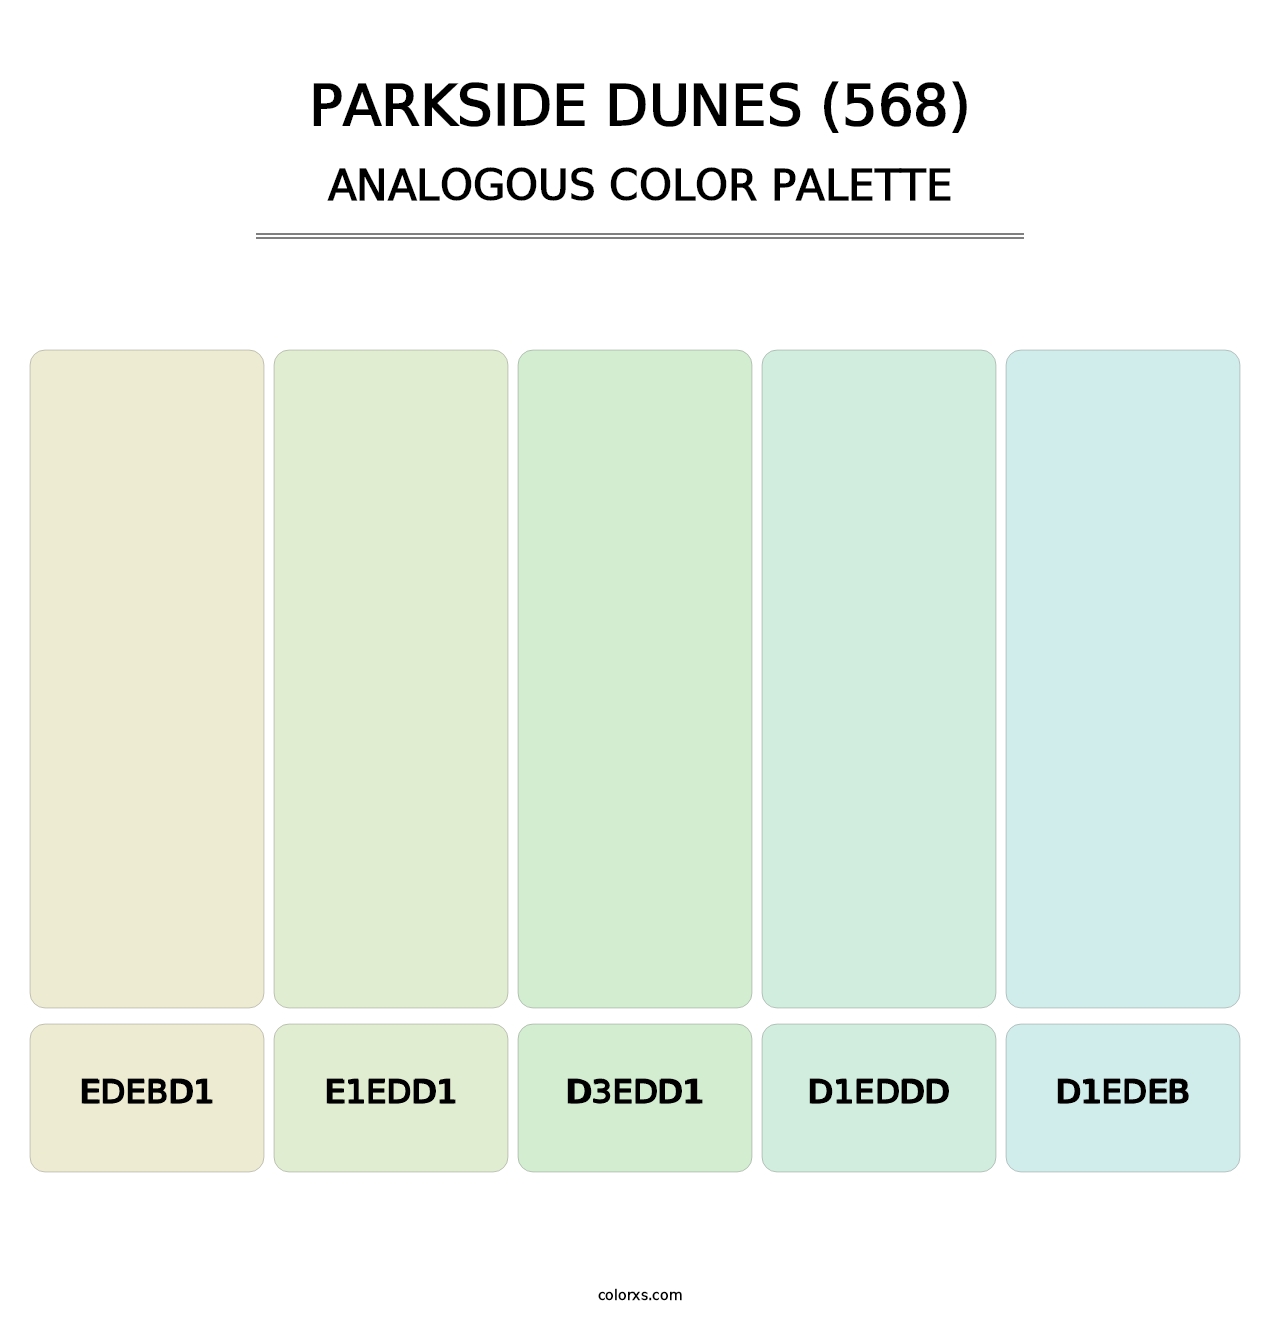 Parkside Dunes (568) - Analogous Color Palette